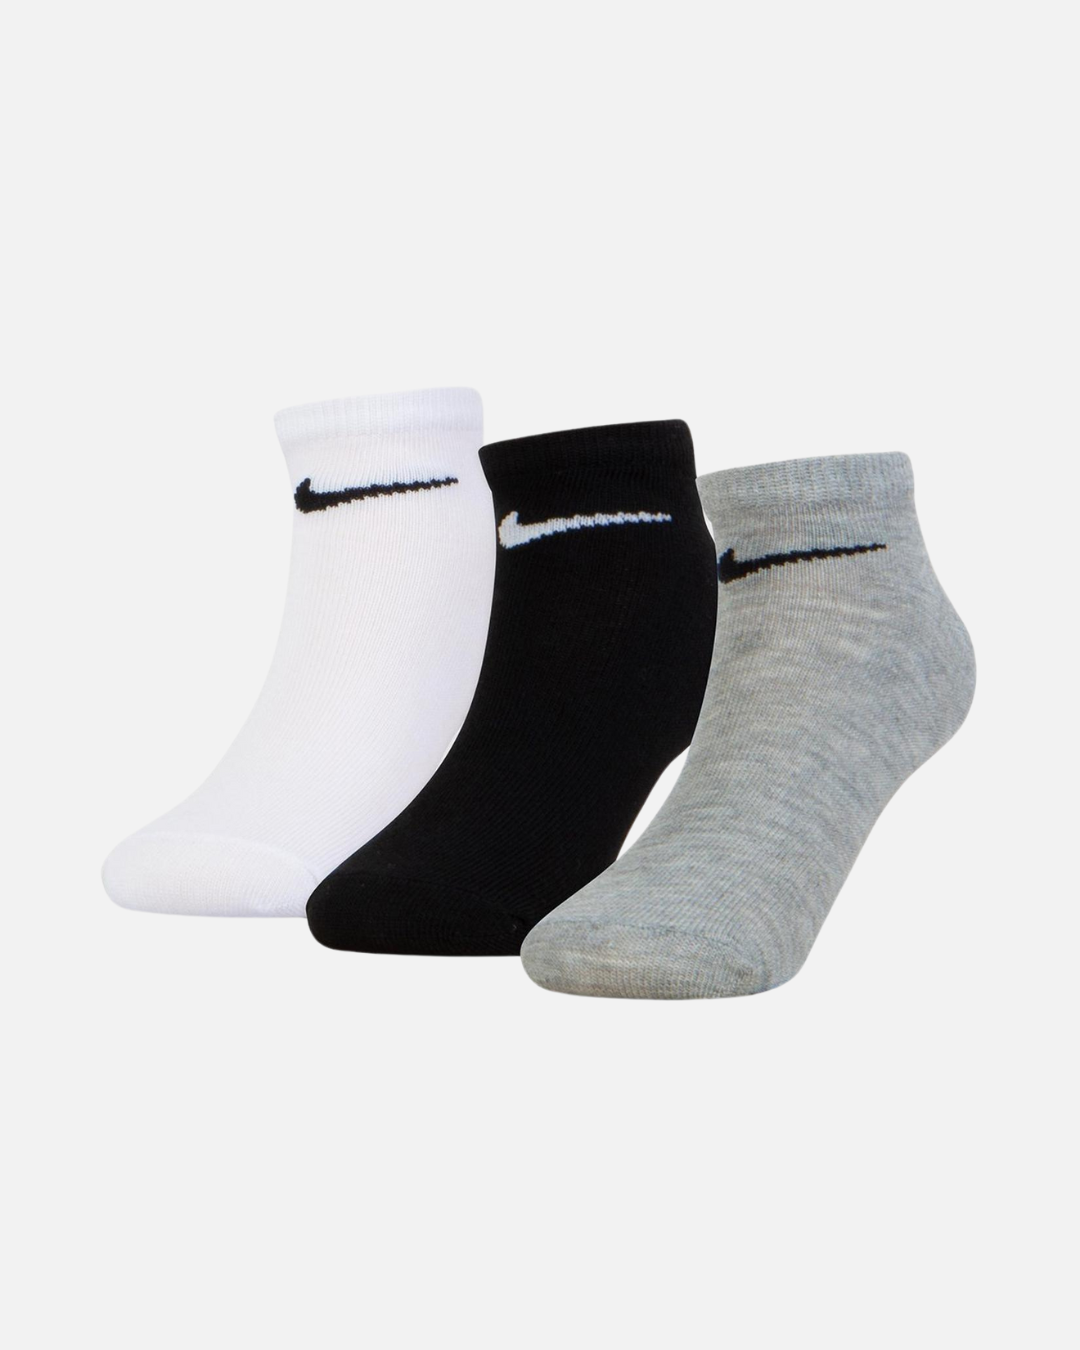 Confezione da 3 paia di calzini Nike Baby - Bianco/Nero/Grigio